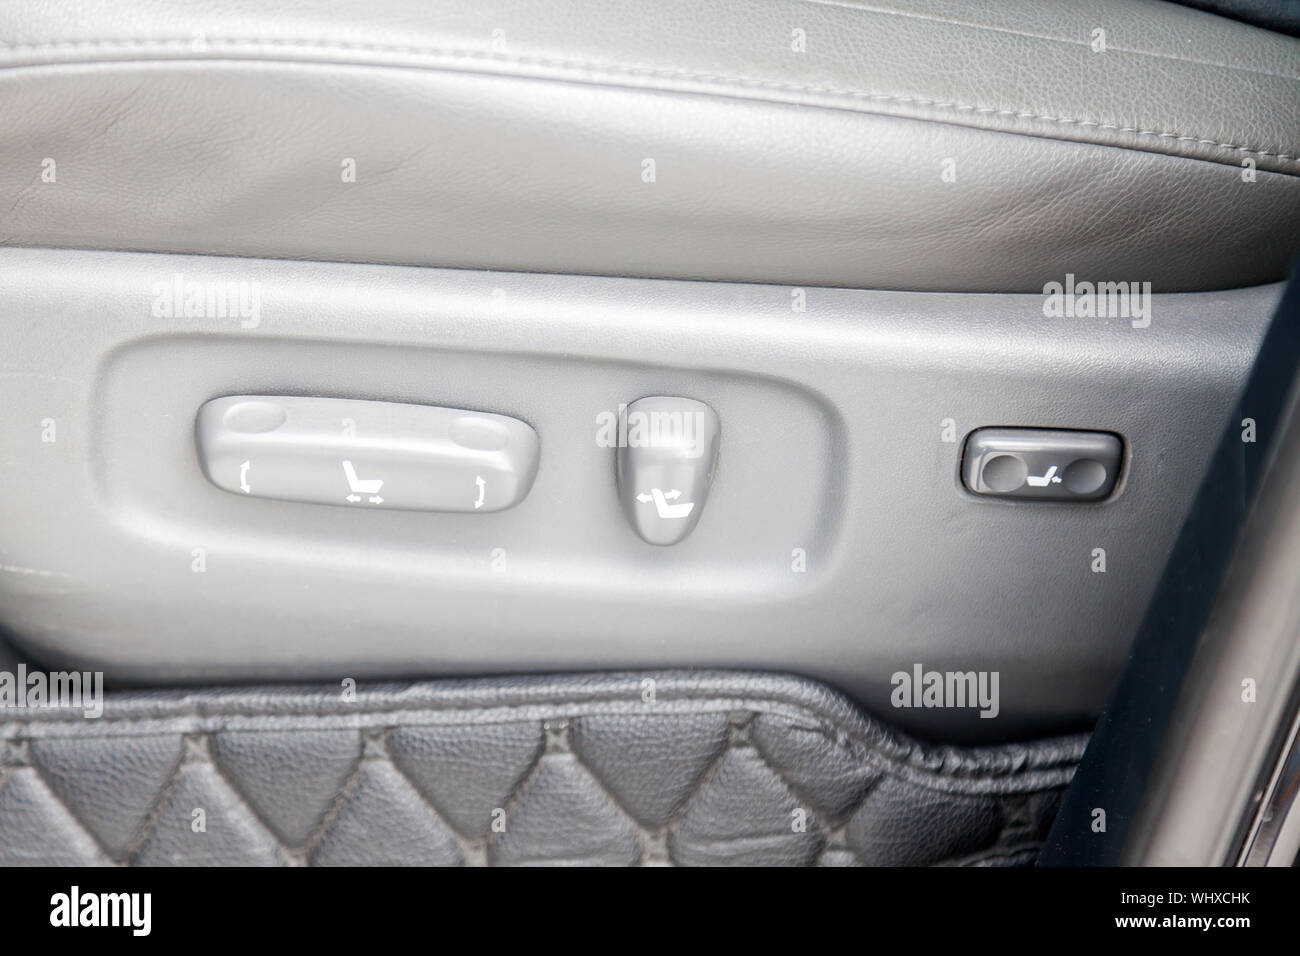 Novosibirsk, Russia - 08.09.2019: vista dell'interno della Toyota Land Cruiser 200 con pulsanti per la regolazione e la regolazione del sedile orizzontalmente in lui Foto Stock